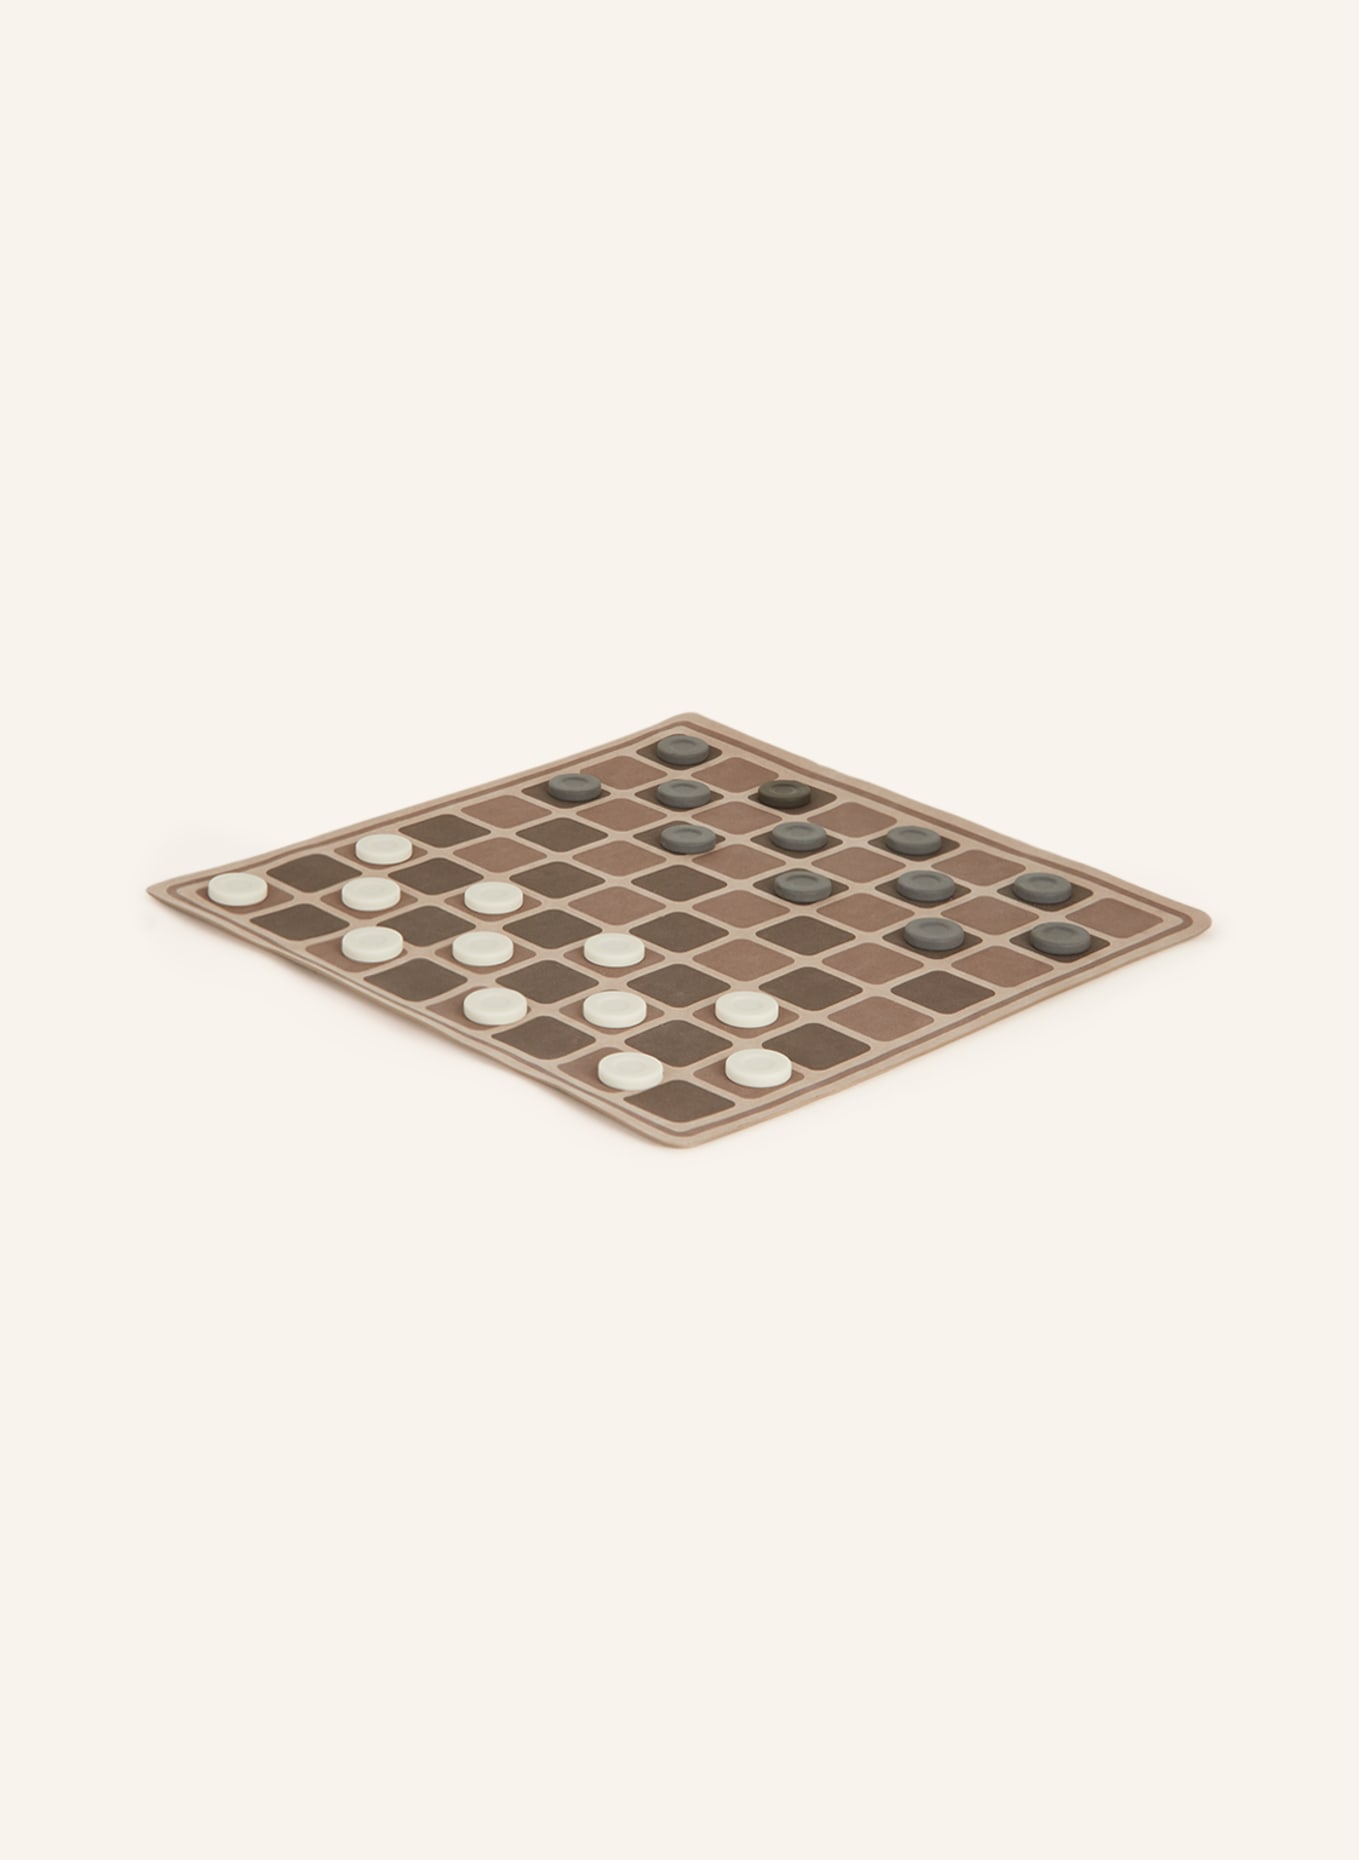 BRUNELLO CUCINELLI Checkers game set, Color: BROWN/ GRAY/ CREAM (Image 2)